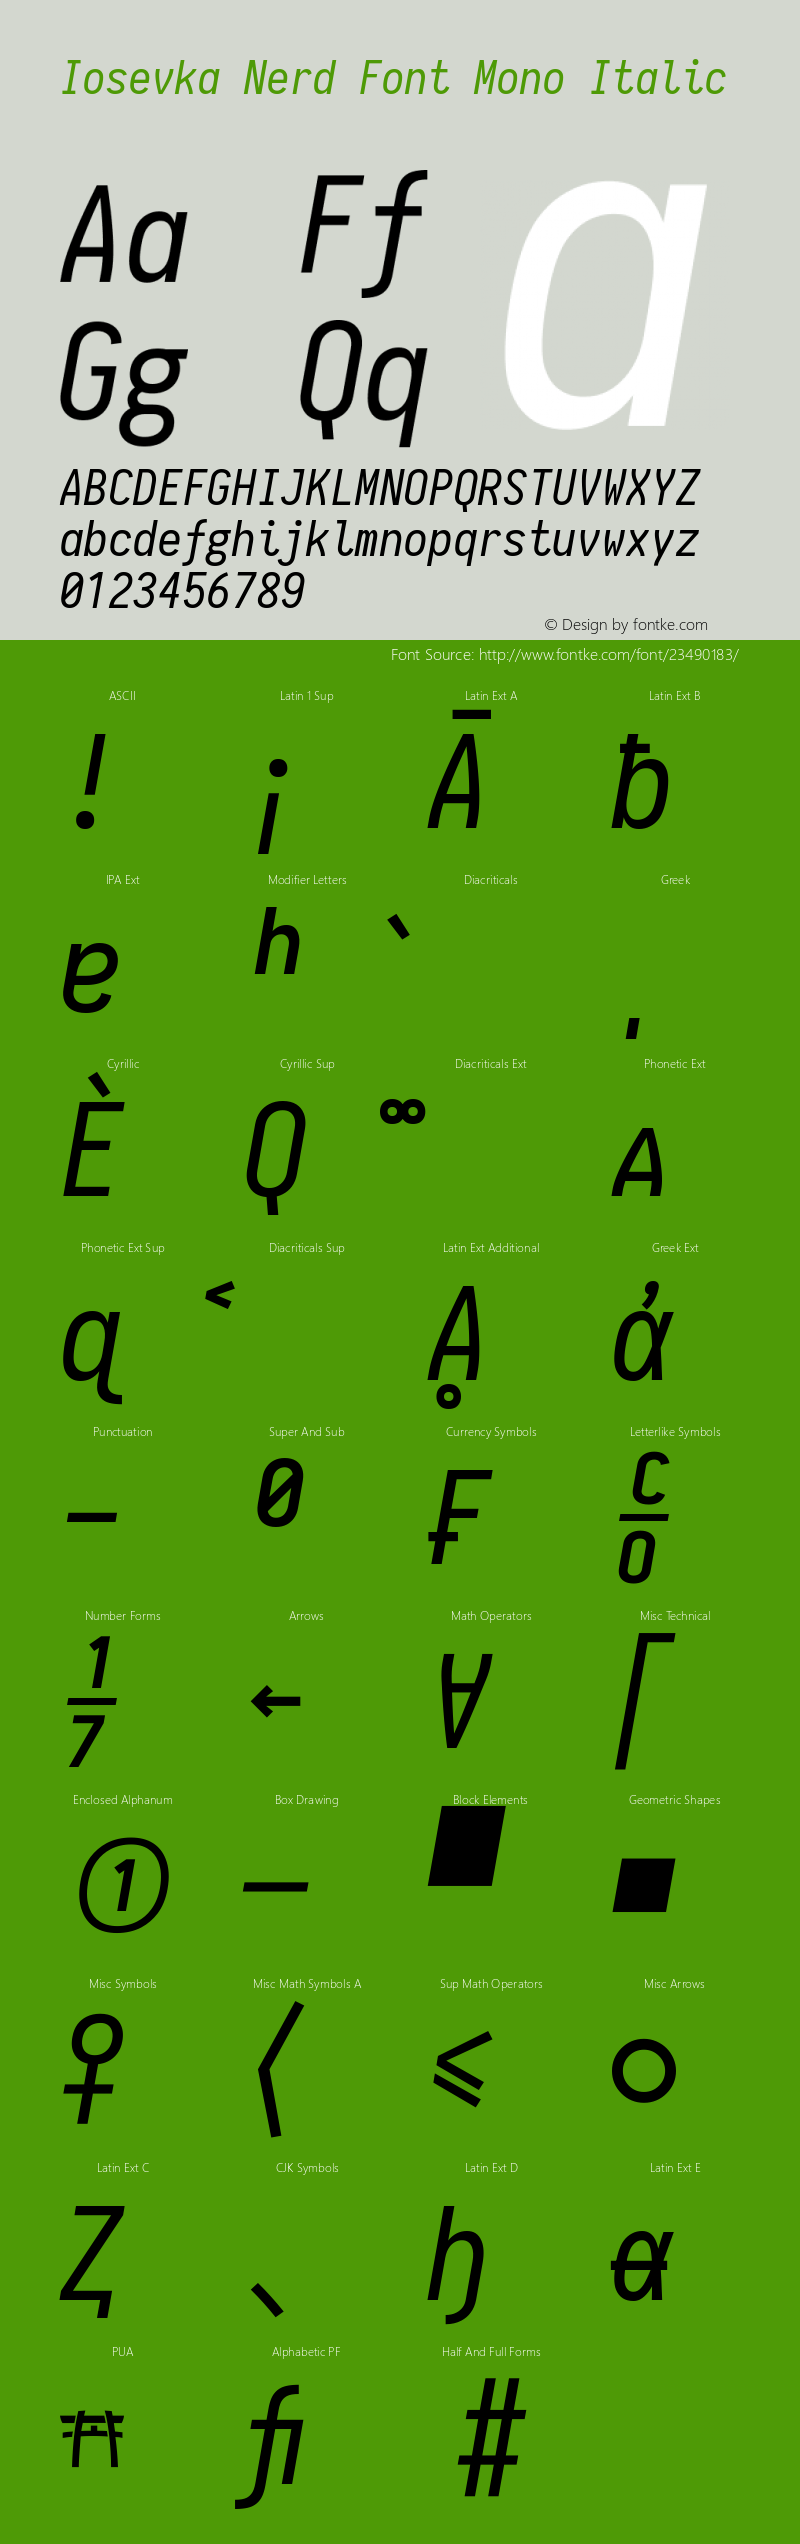 Iosevka Italic Nerd Font Complete Mono 1.8.4; ttfautohint (v1.5)图片样张